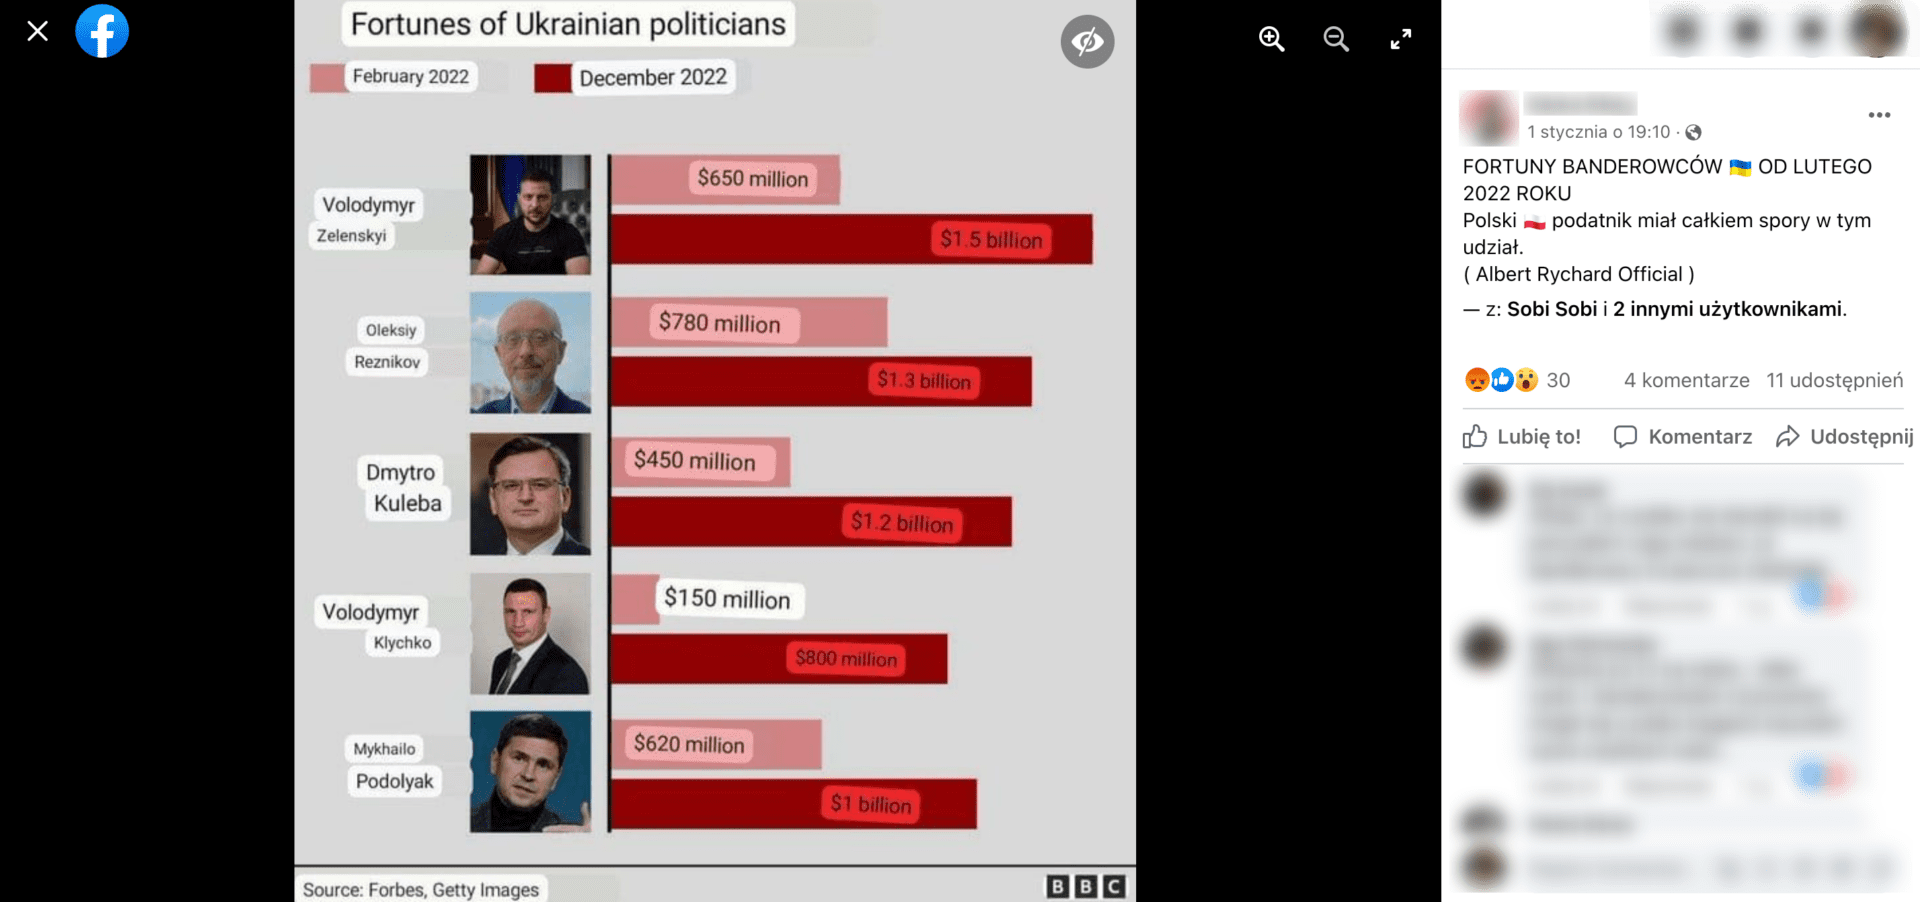 Zrzut ekranu analizowanego posta na Facebooku. Zawiera on grafikę, z której wynika, że czołowi ukraińscy politycy bardzo wzbogacili się dzięki wojnie. Post zdobył 30 reakcji, 4 komentarze i 11 udostępnień.